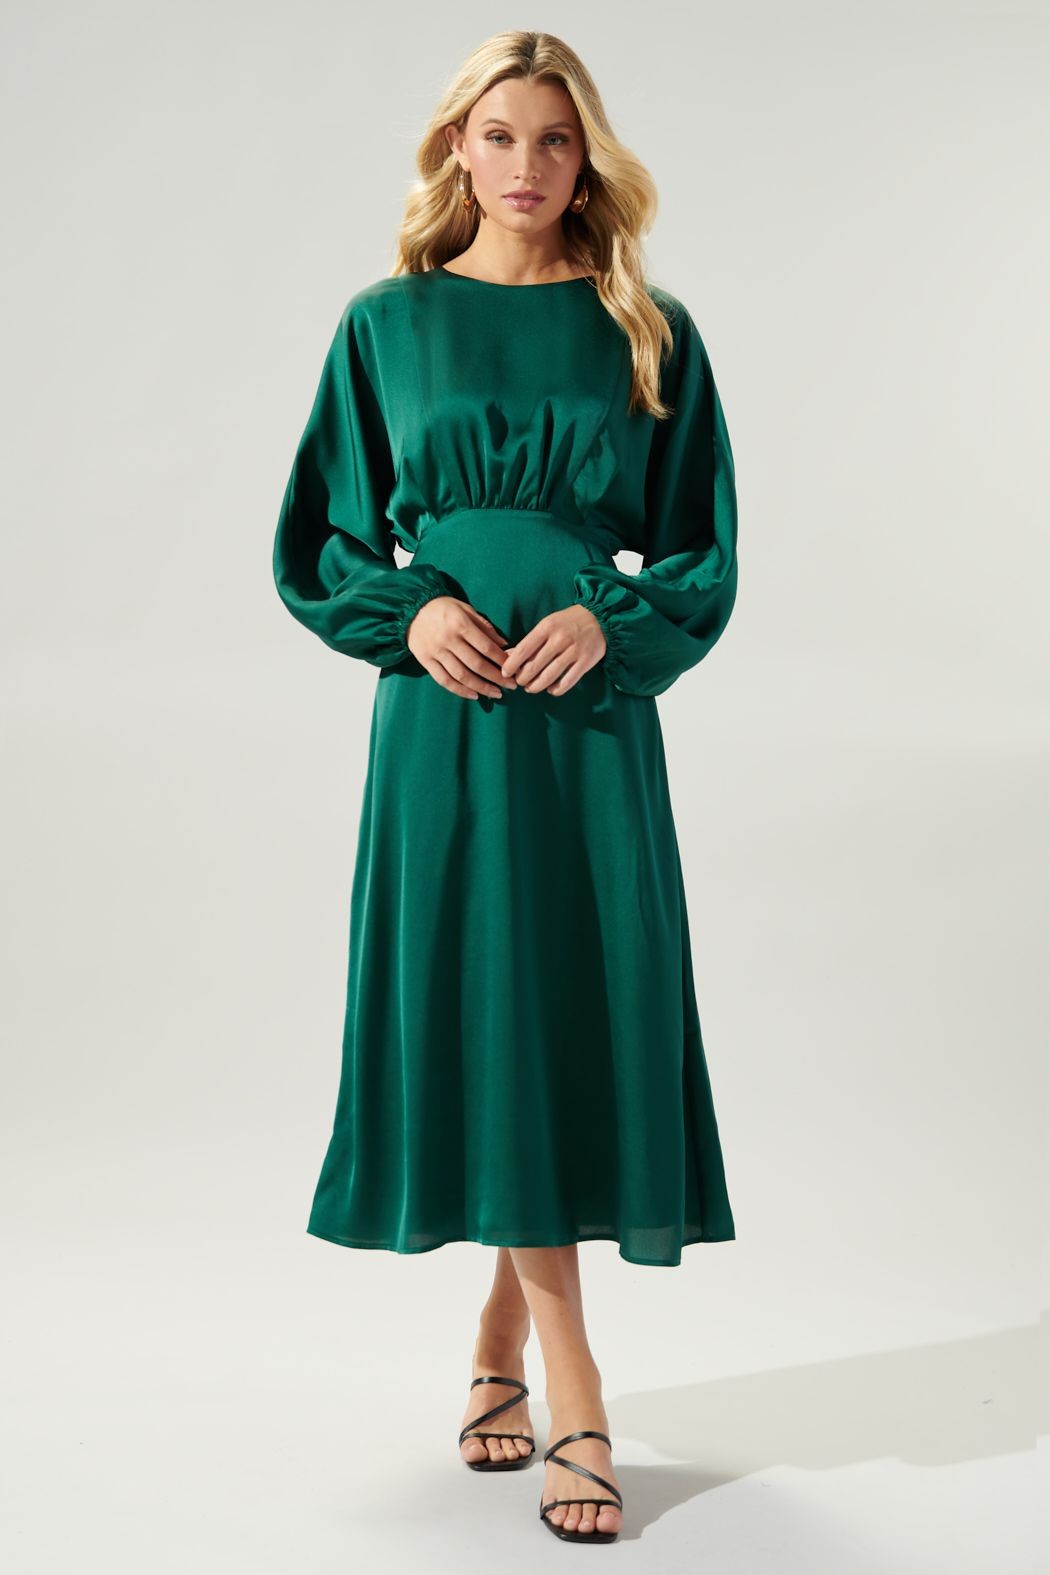 Green Goddess Dress